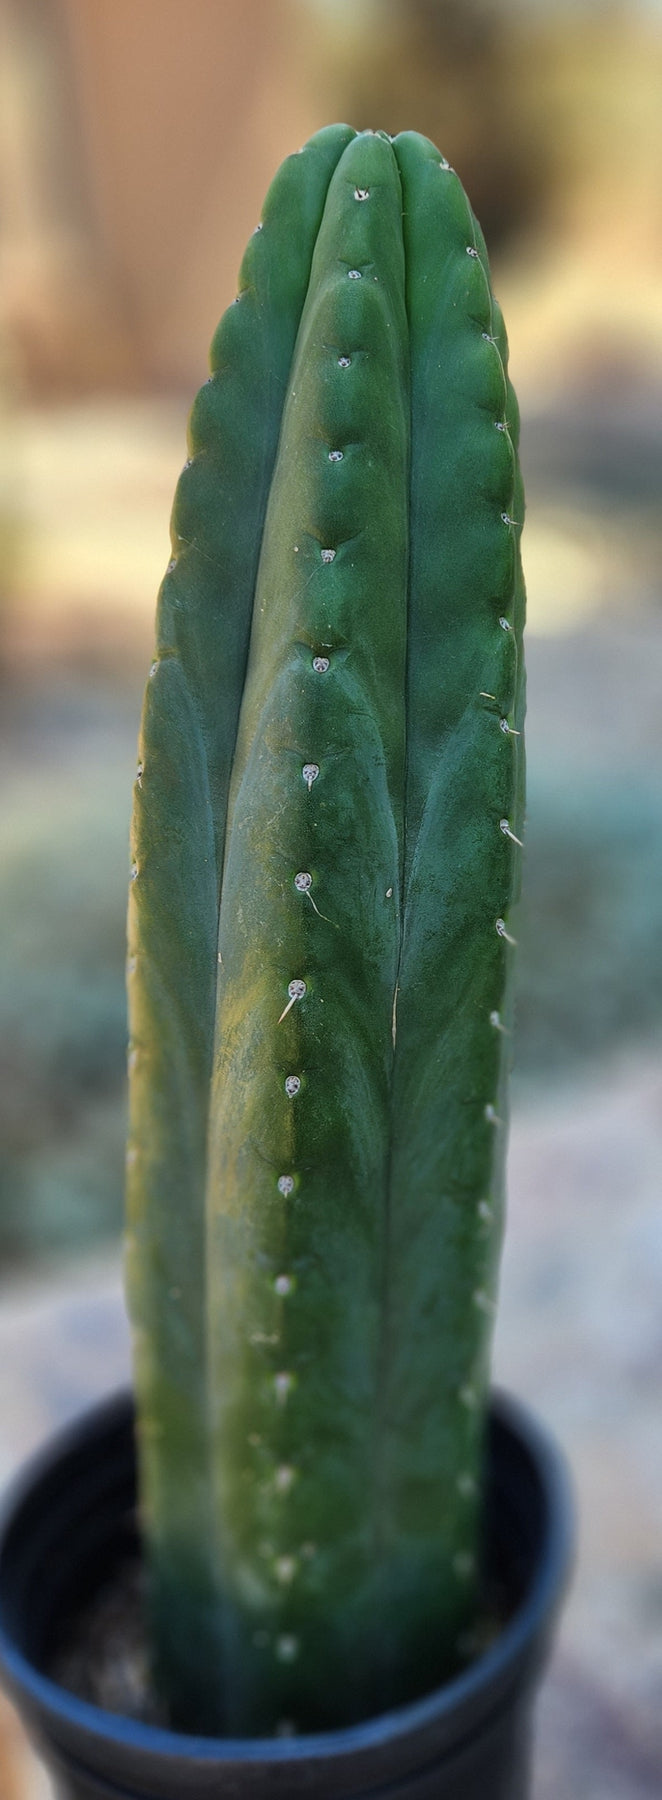 #EC181 EXACT Trichocereus Pachanoi "ECK" Ornamental Cactus 16”-Cactus - Large - Exact-The Succulent Source